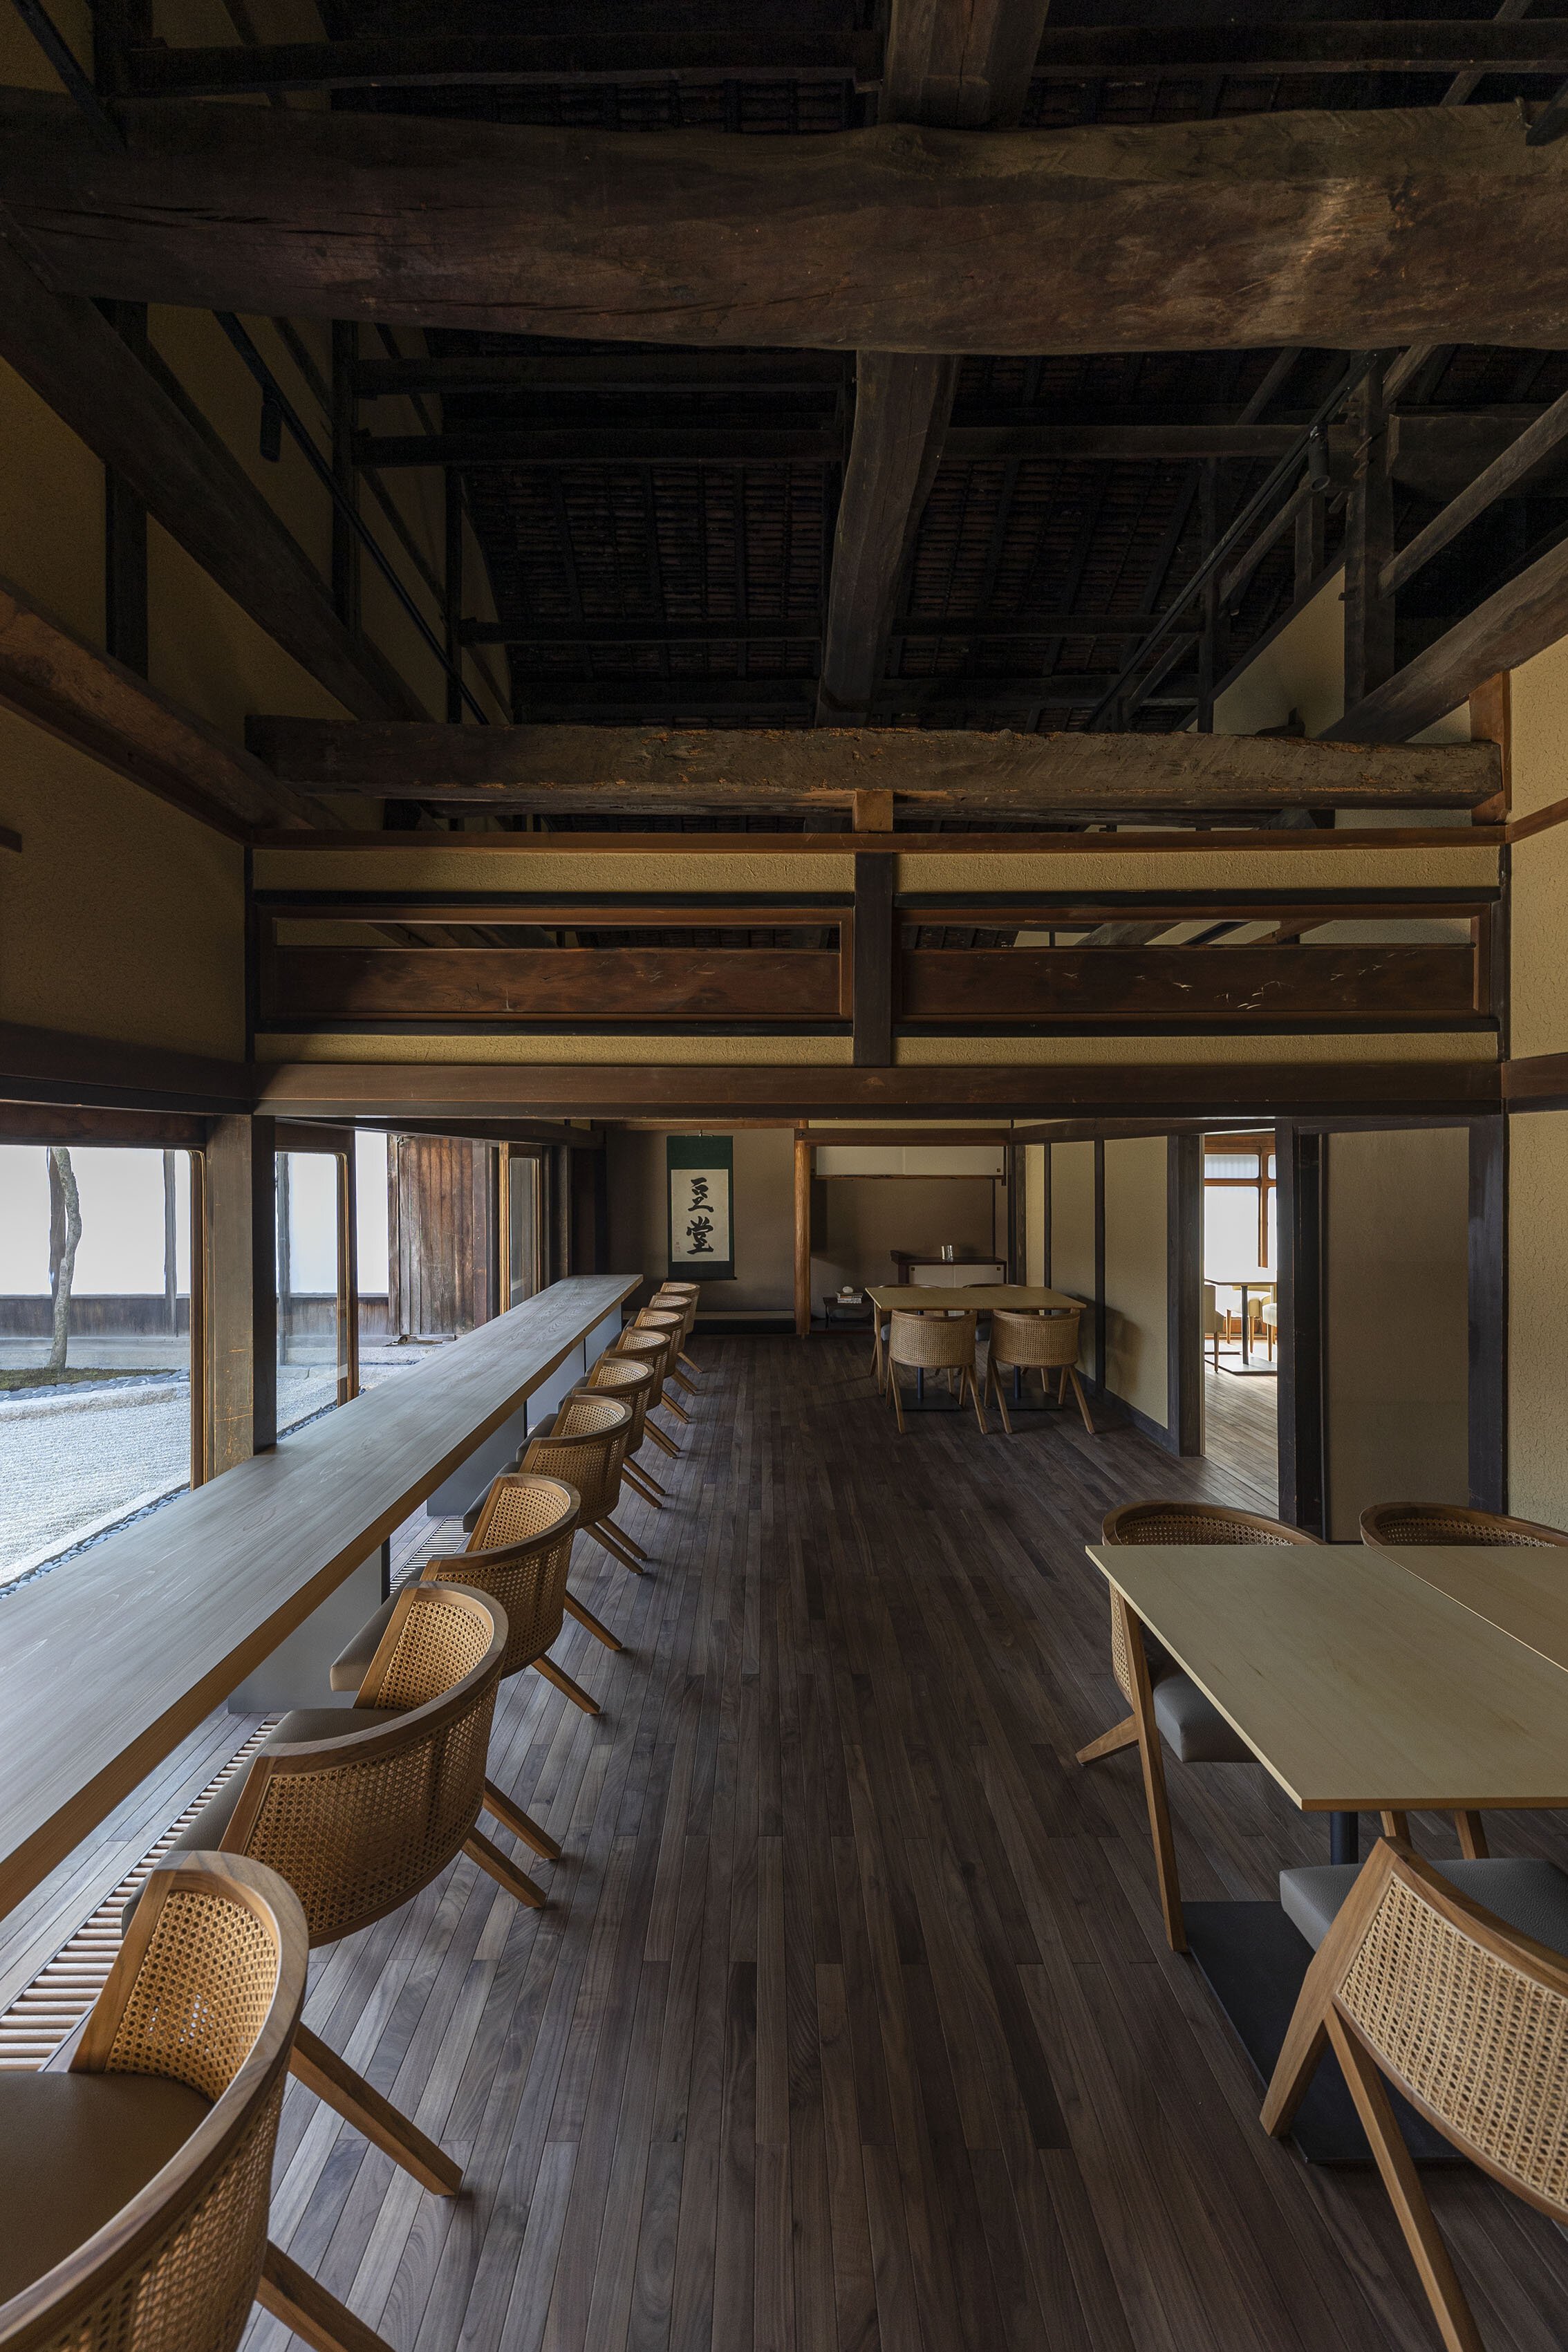  杉本博司と榊田倫之が率いる新素材研究所がデザインを手掛けた小田垣商店本店のカフェ。カウンター越しに庭園を望むことができる 